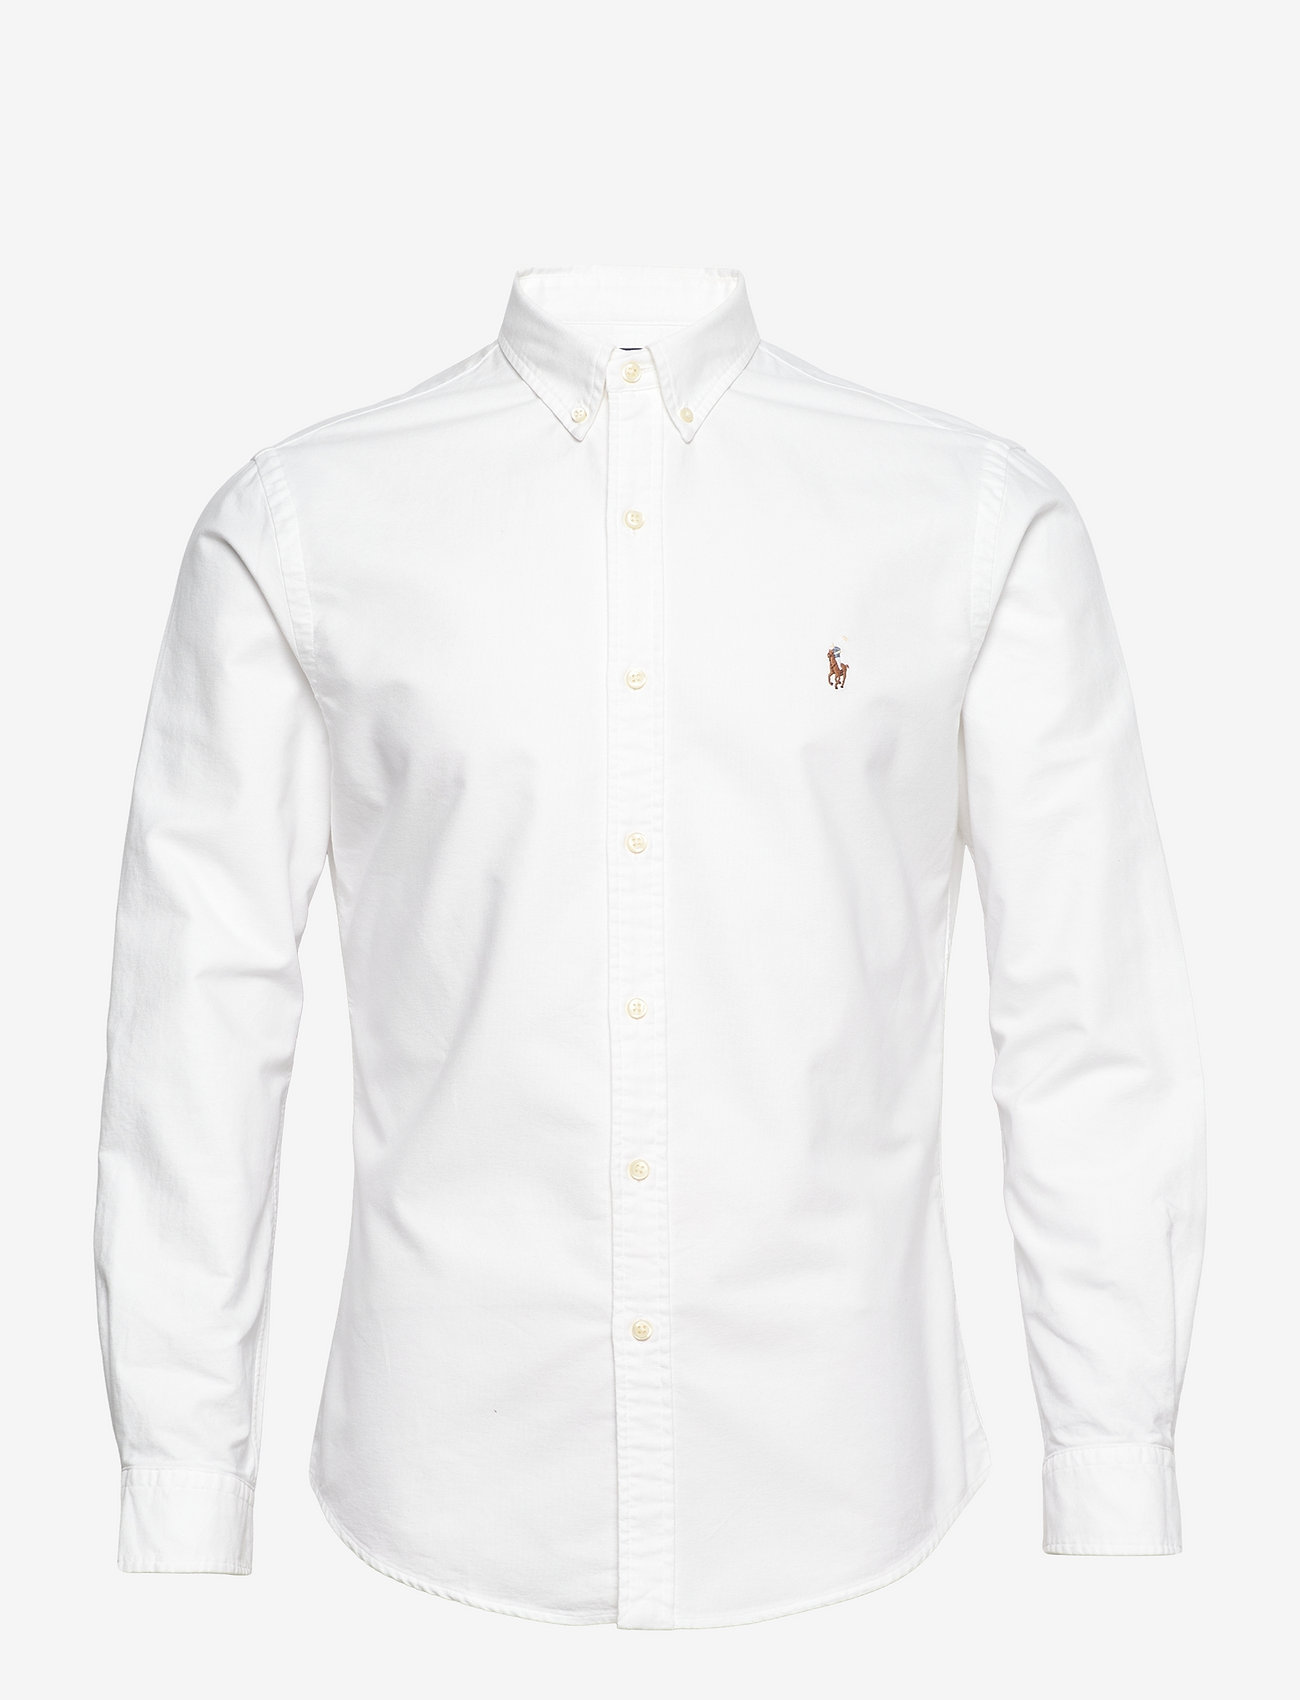 white blouse ralph lauren